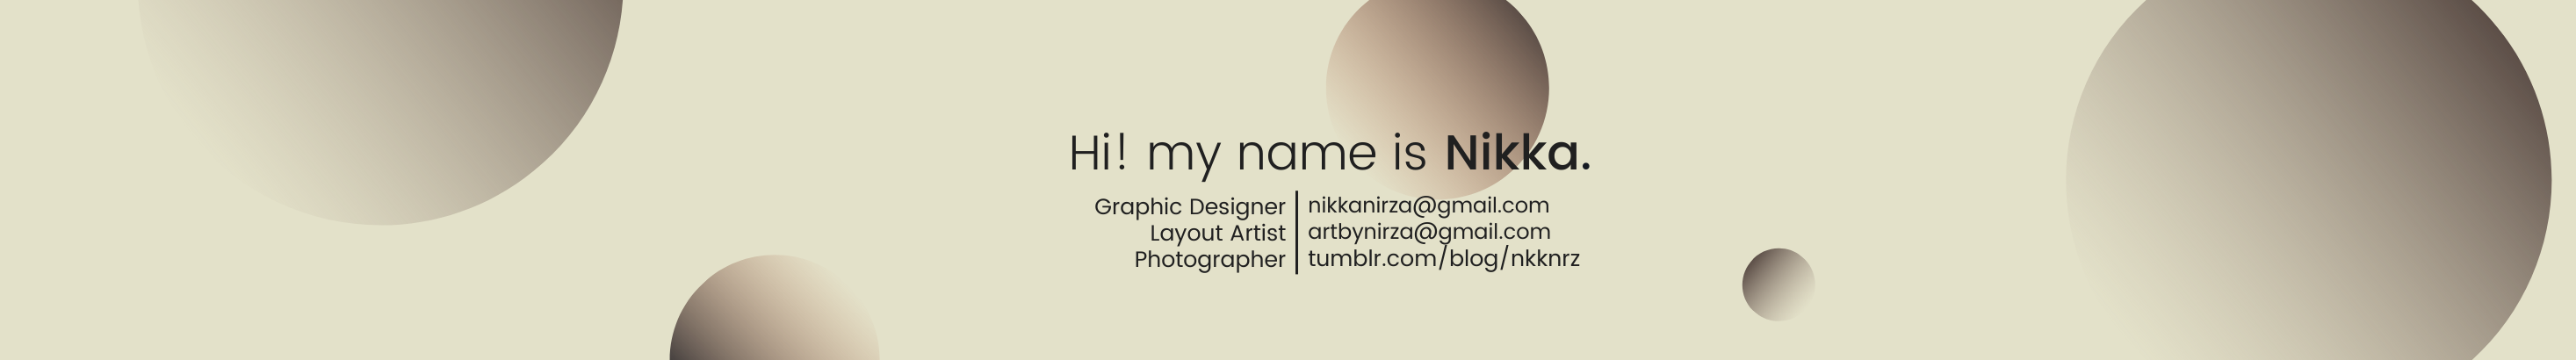 Banner de perfil de Nikka Nirza